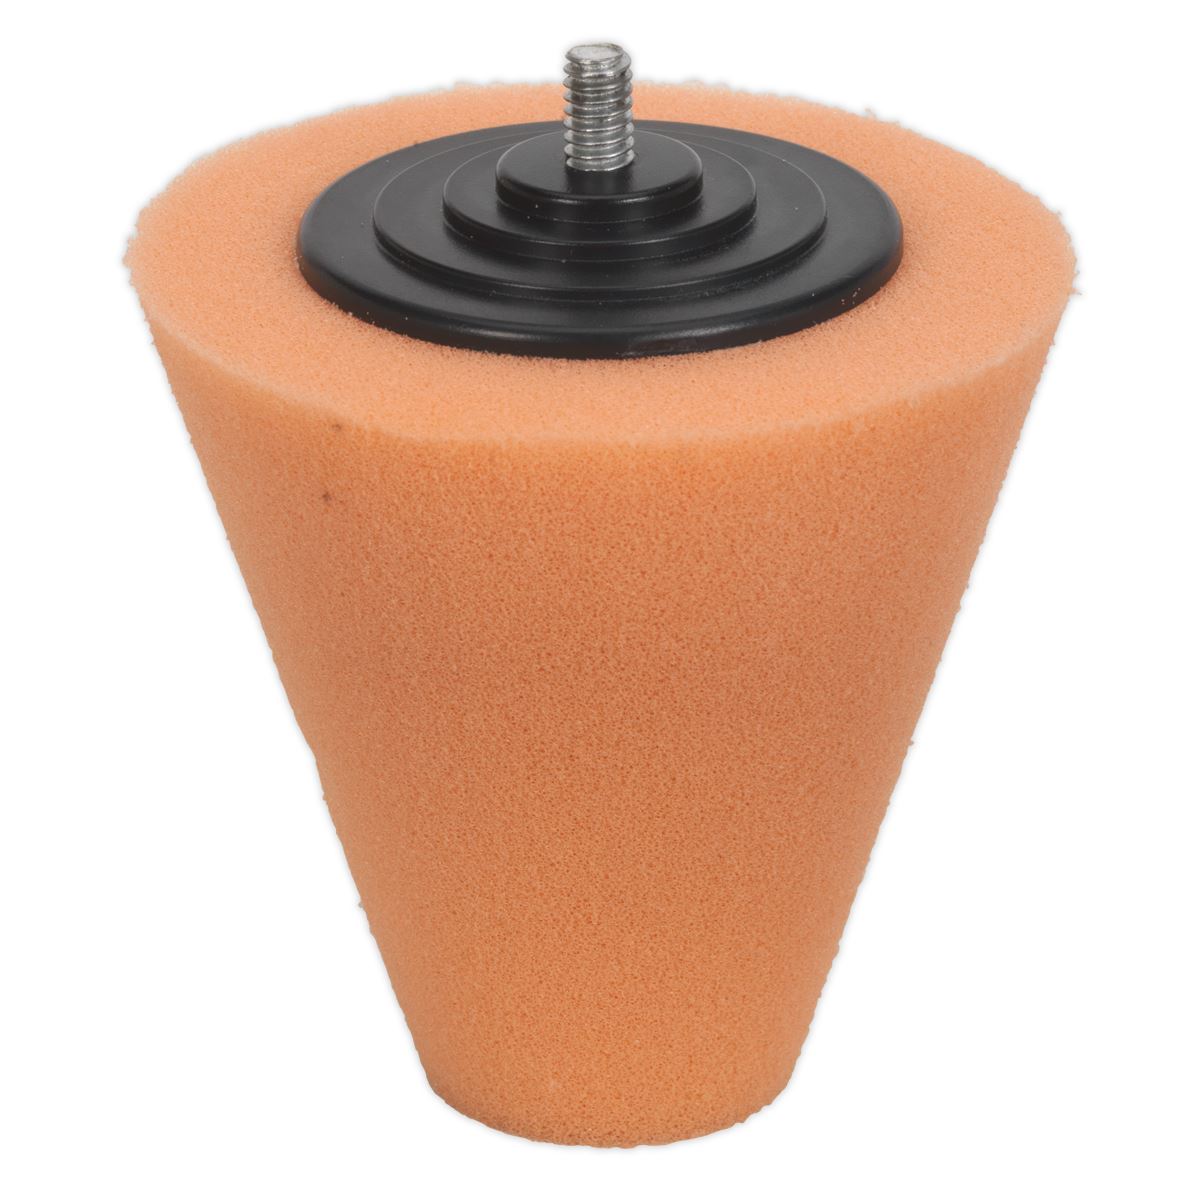 Sealey Buffing & Polishing Foam Cone Orange/Firm